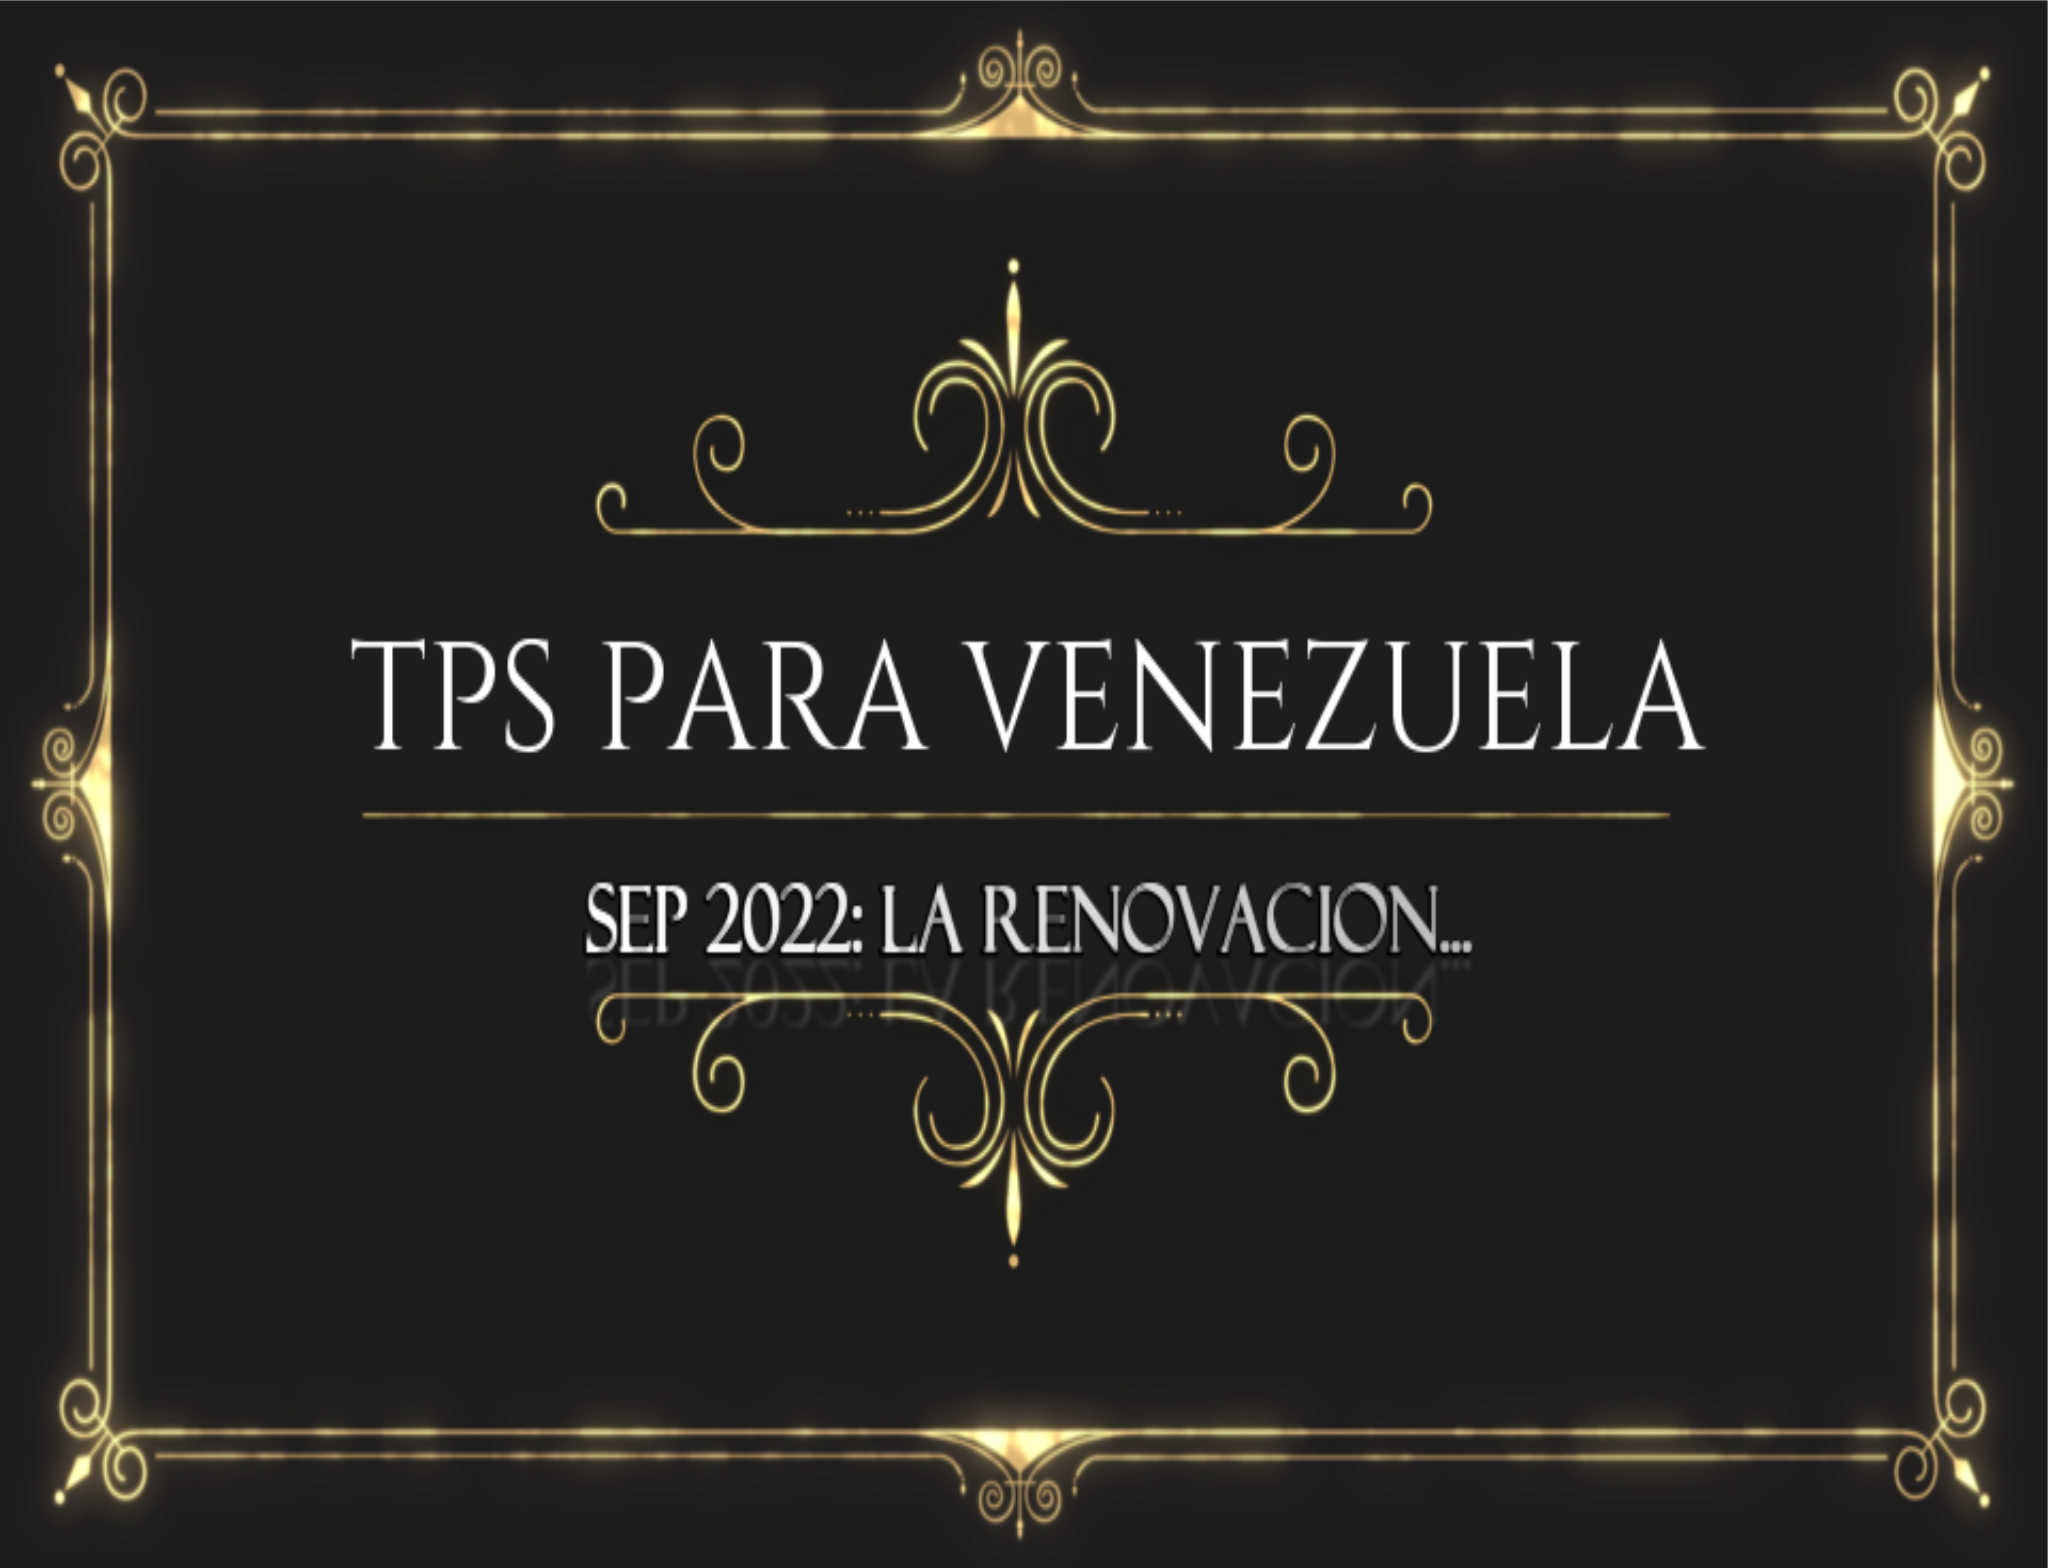 Ultimas instrucciones con relación al TPS de Venezuela por Juan Rodulfo